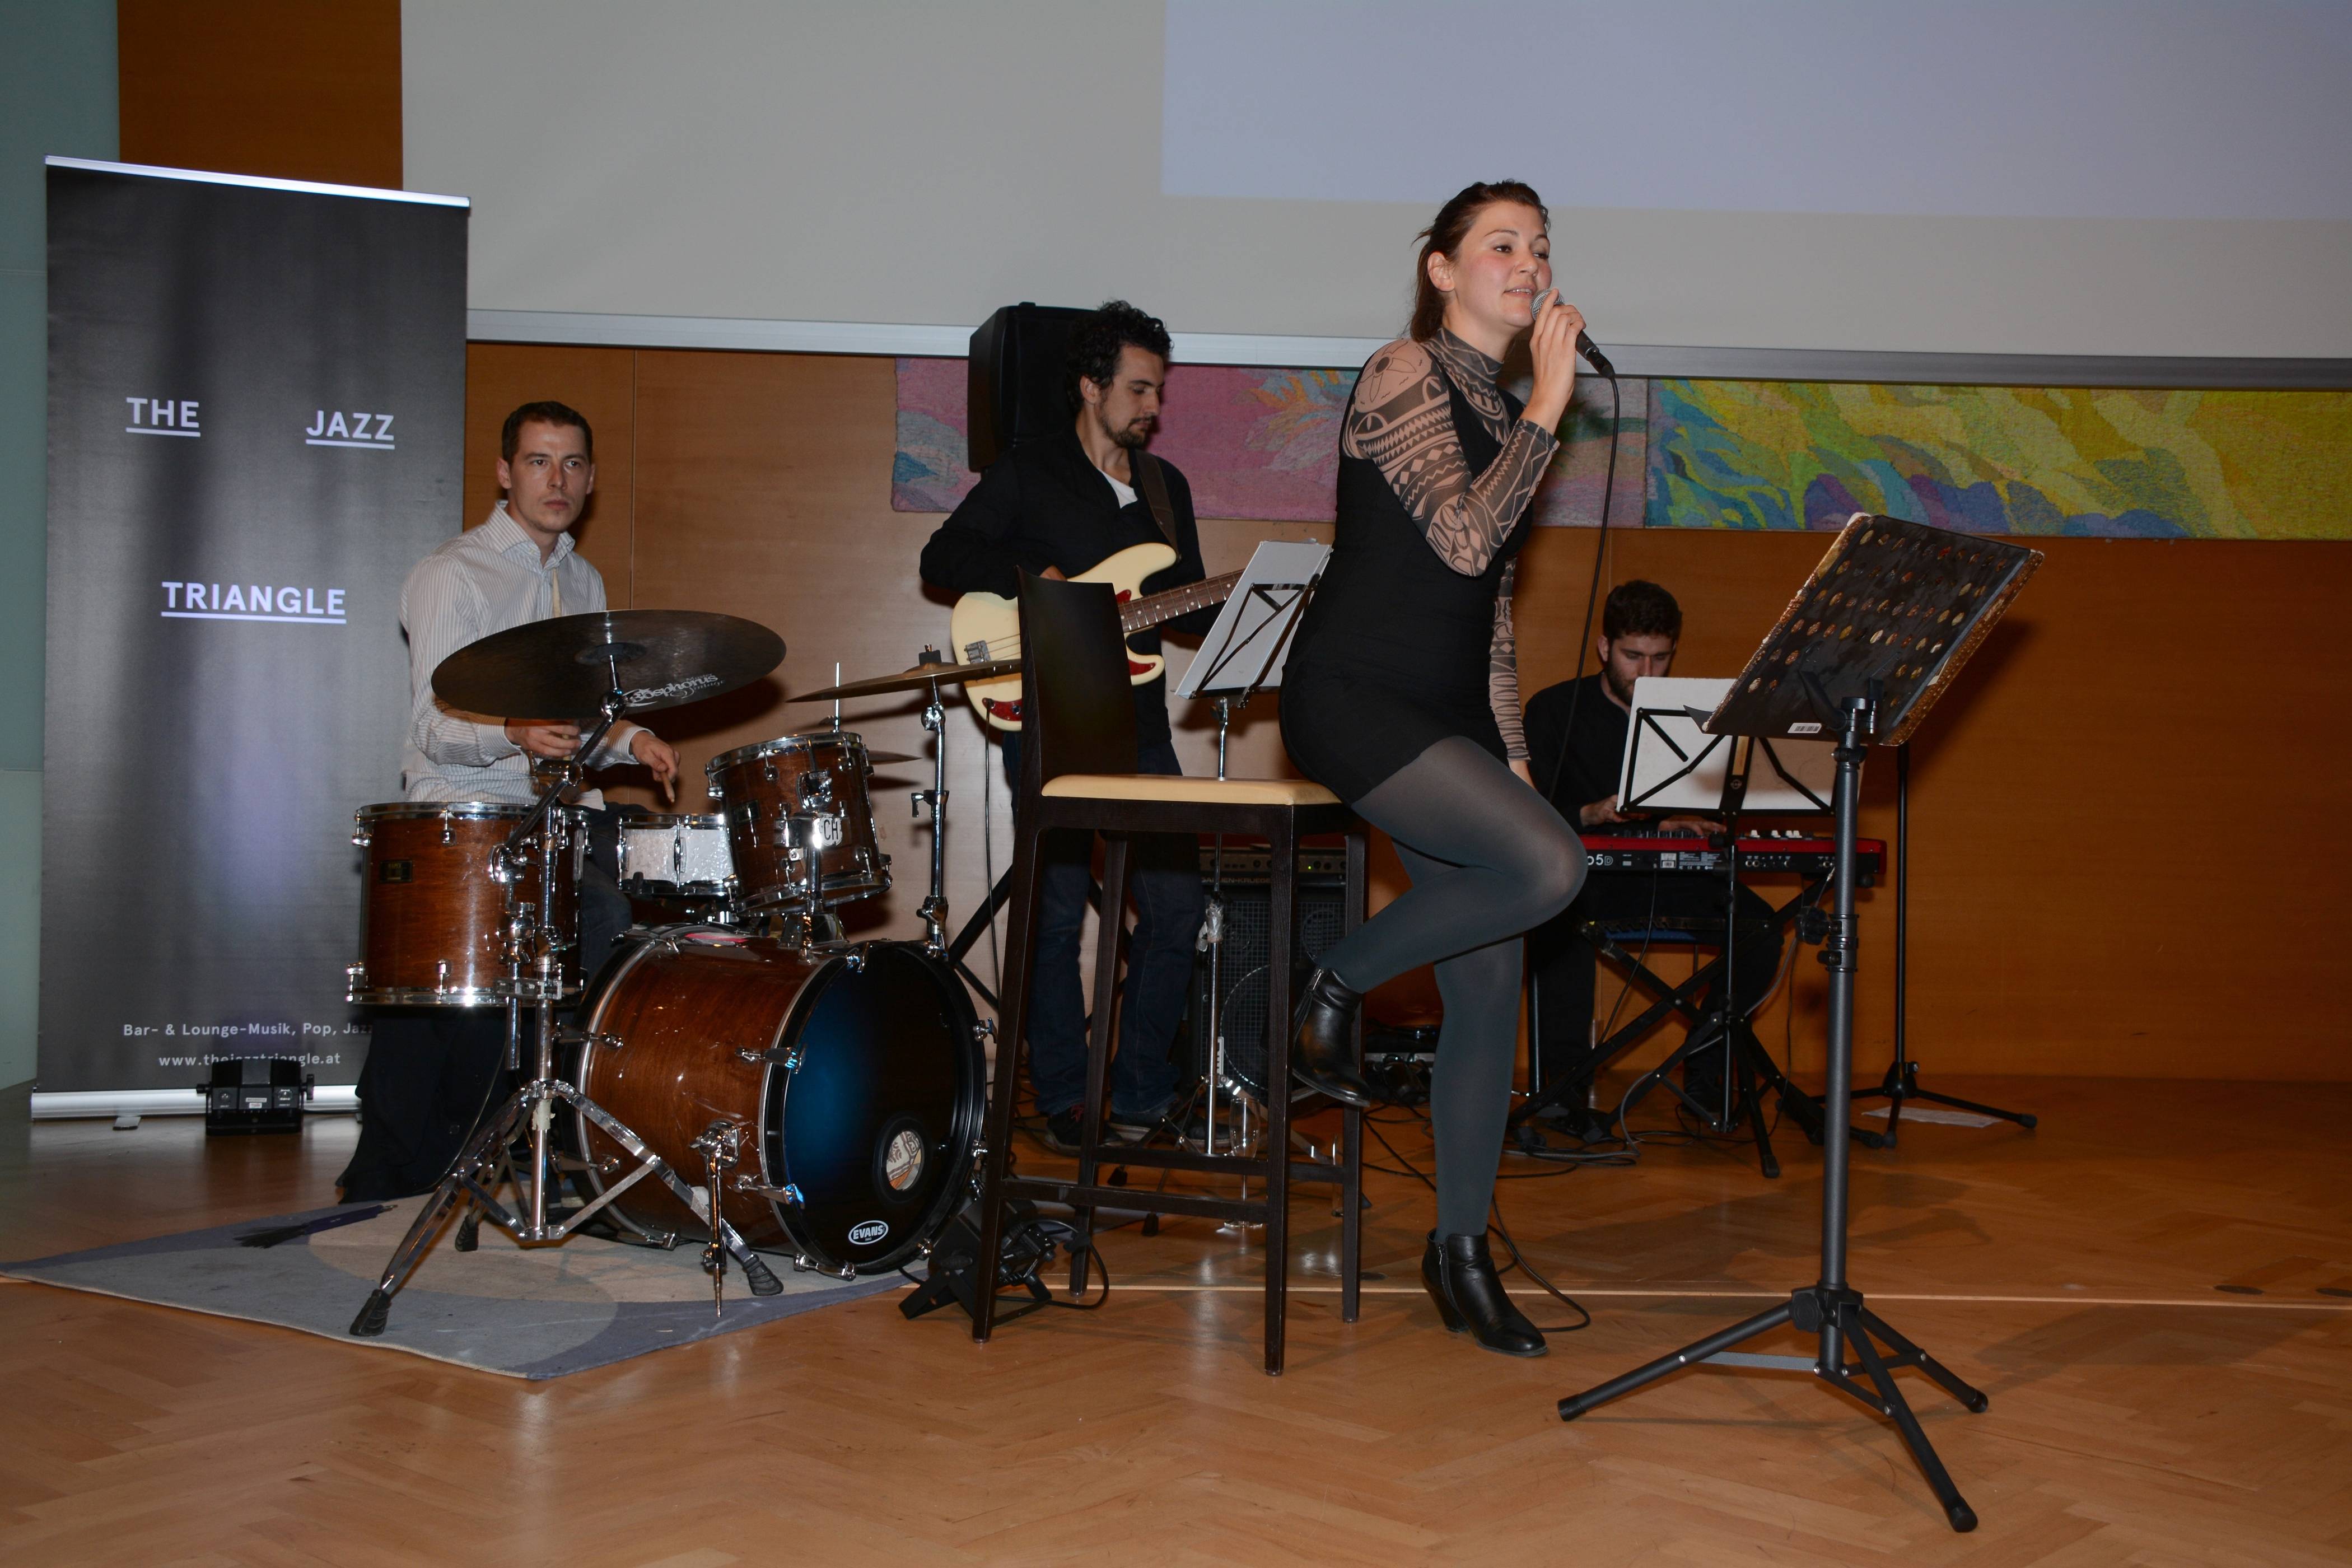 Die Band "The Jazz Triangle" mit Heidi Erler sorgte mit ihrer Musik für die richtige Atmosphäre. © LPD Gruber